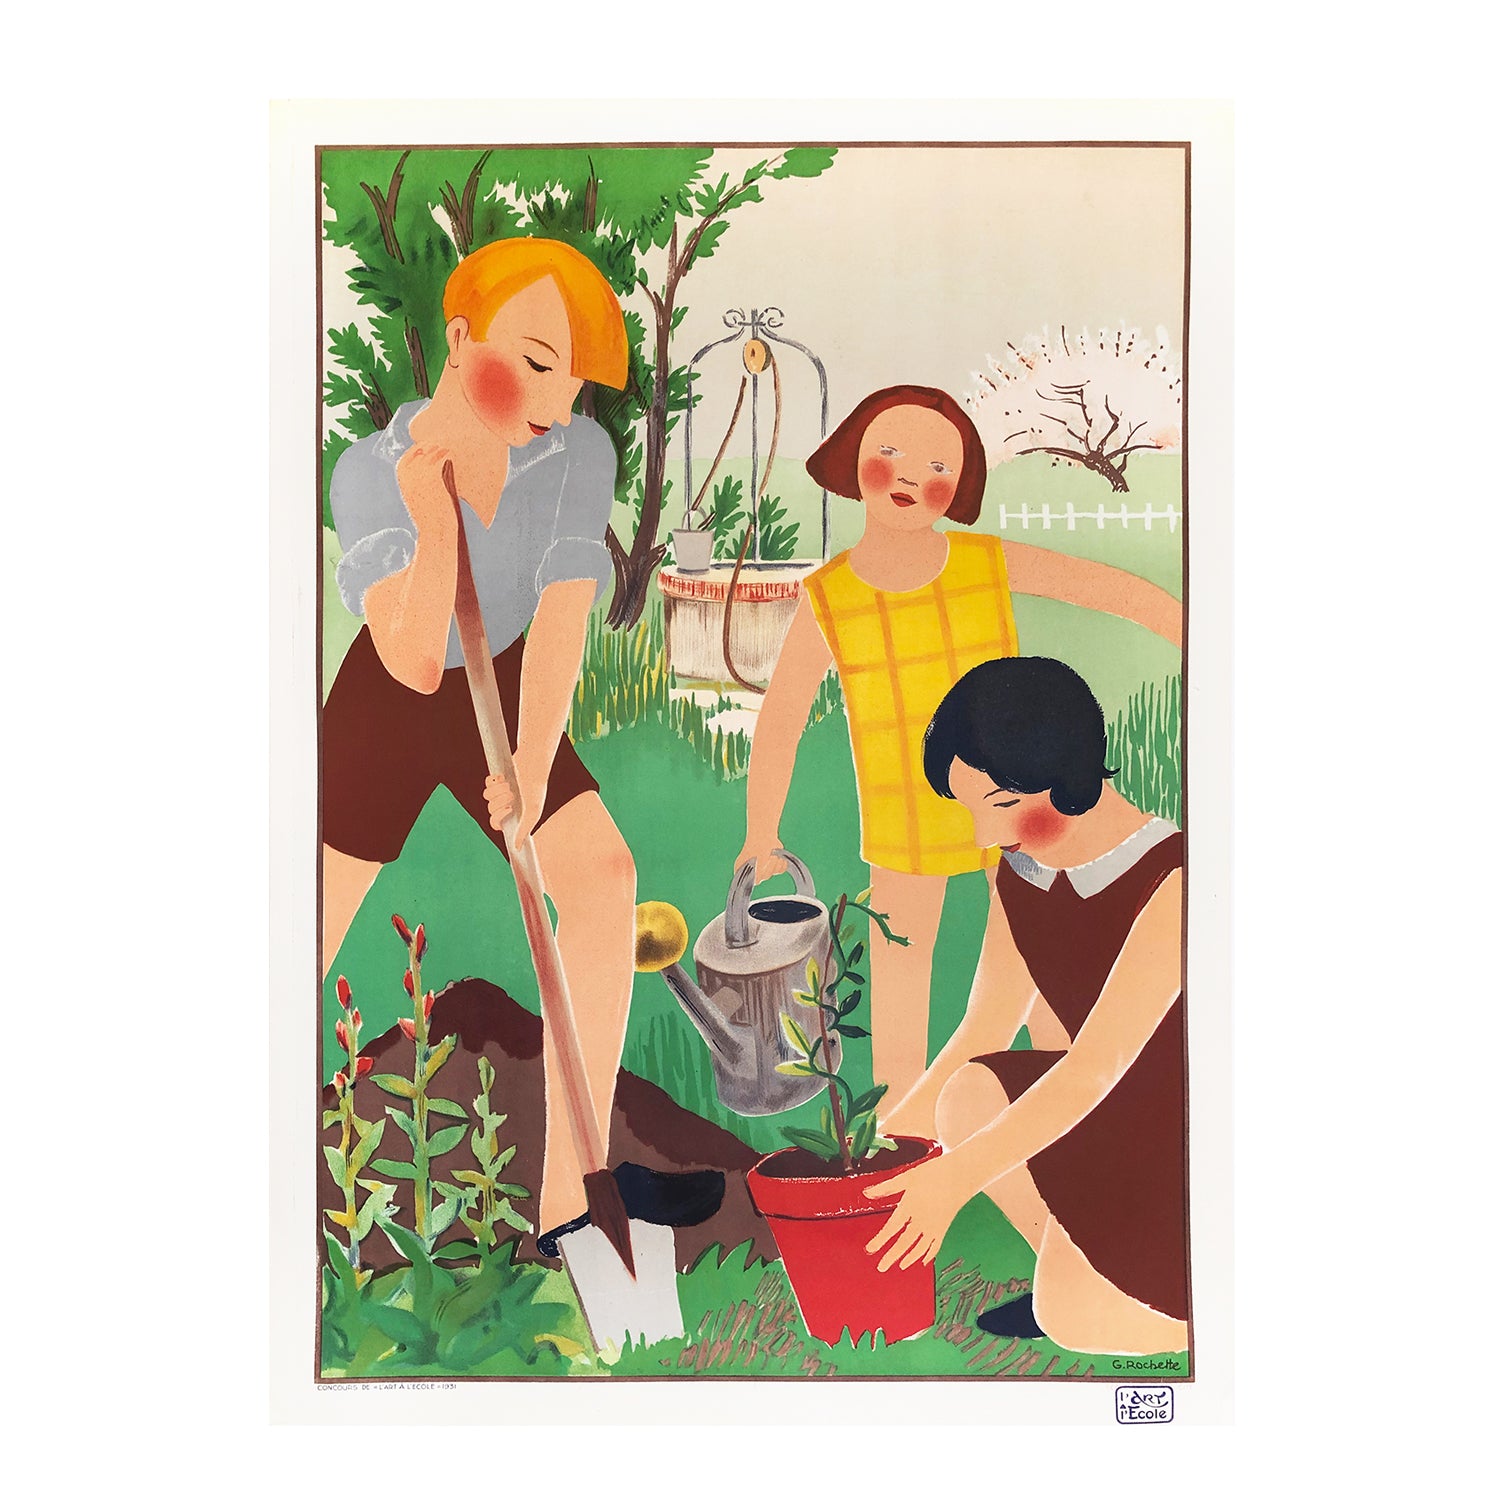 Original French classroom poster 'L'art à l'école' published by Ecole Art et Publicitie, 1931. Image features three children gardening. 